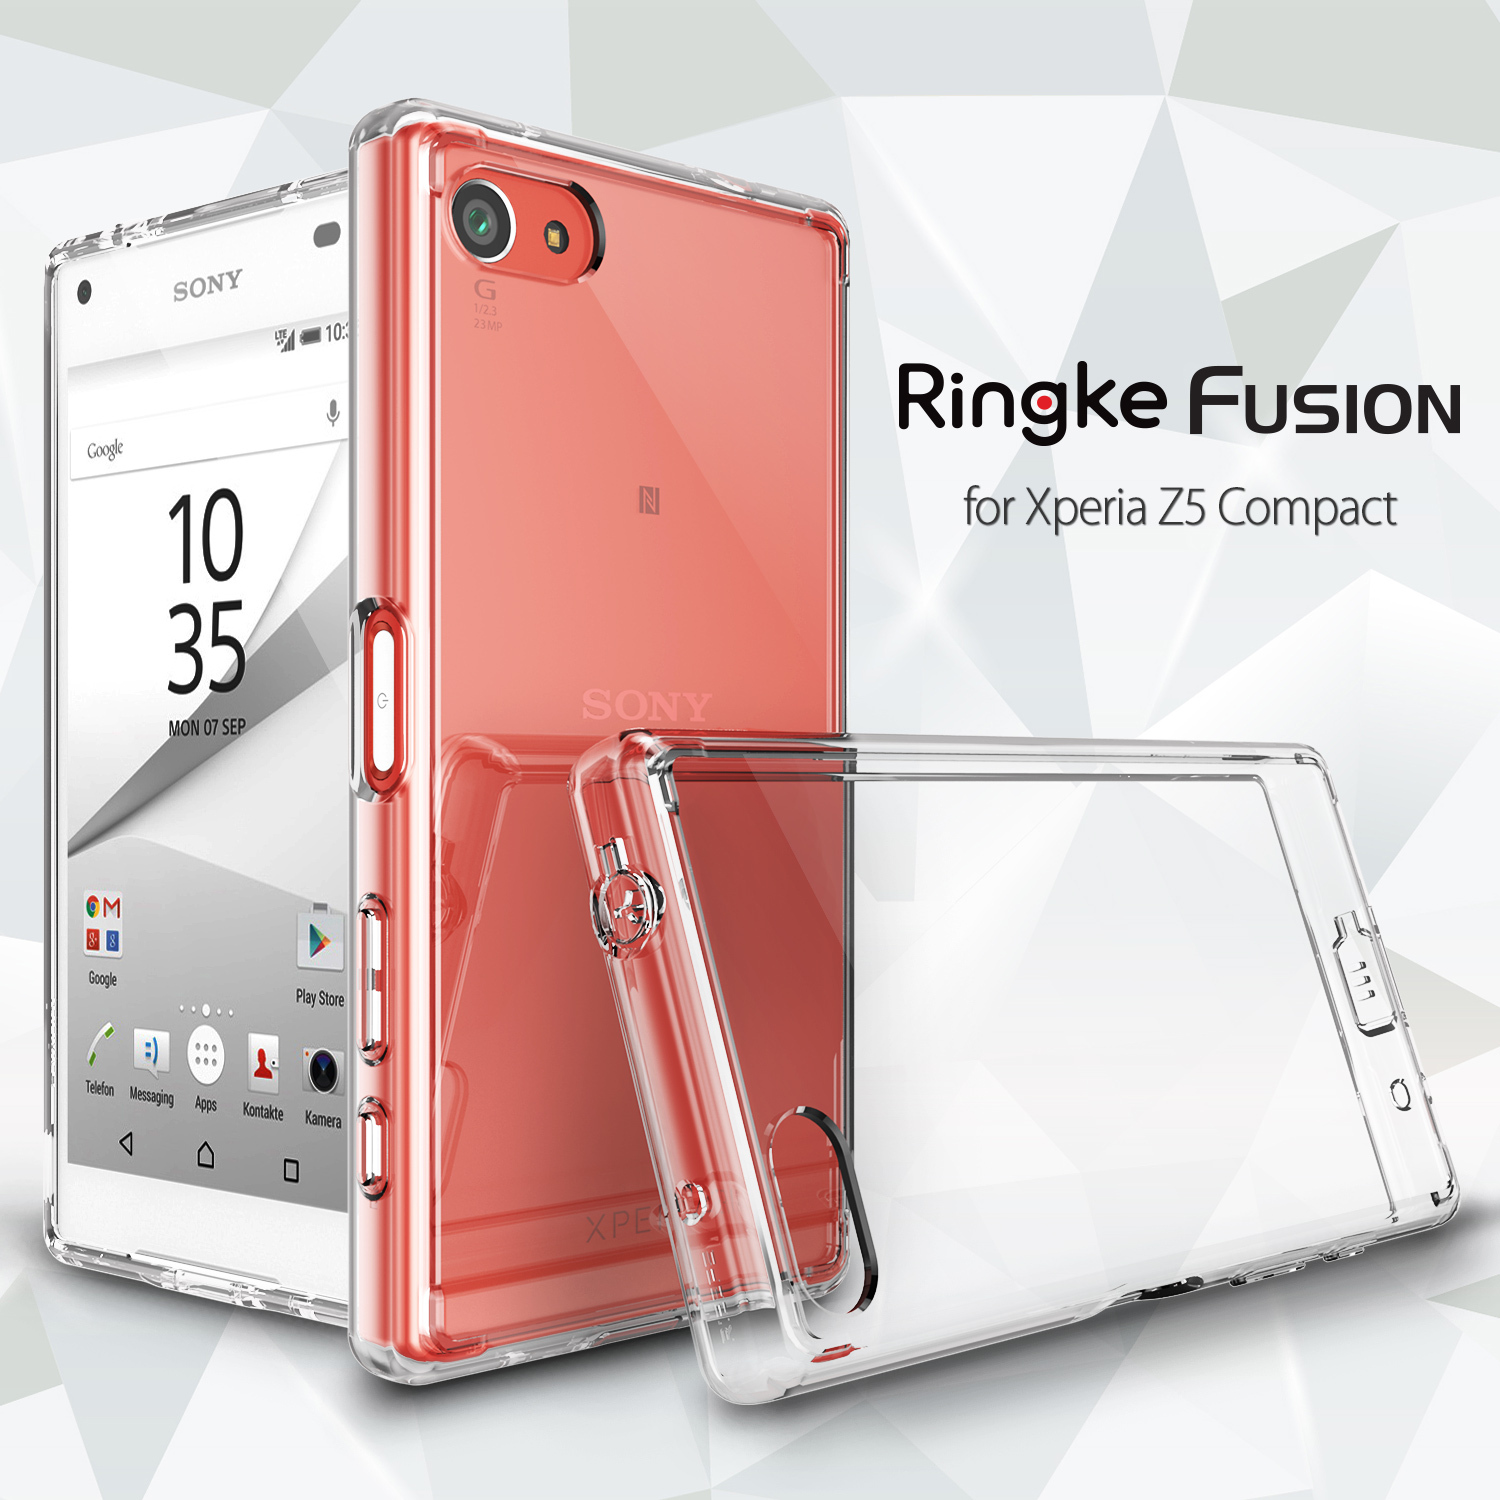 Ốp lưng Sony Xperia Z5 Compact nhựa cứng trong suốt Ringke Fusion hiệu Rearth Hàn Quốc